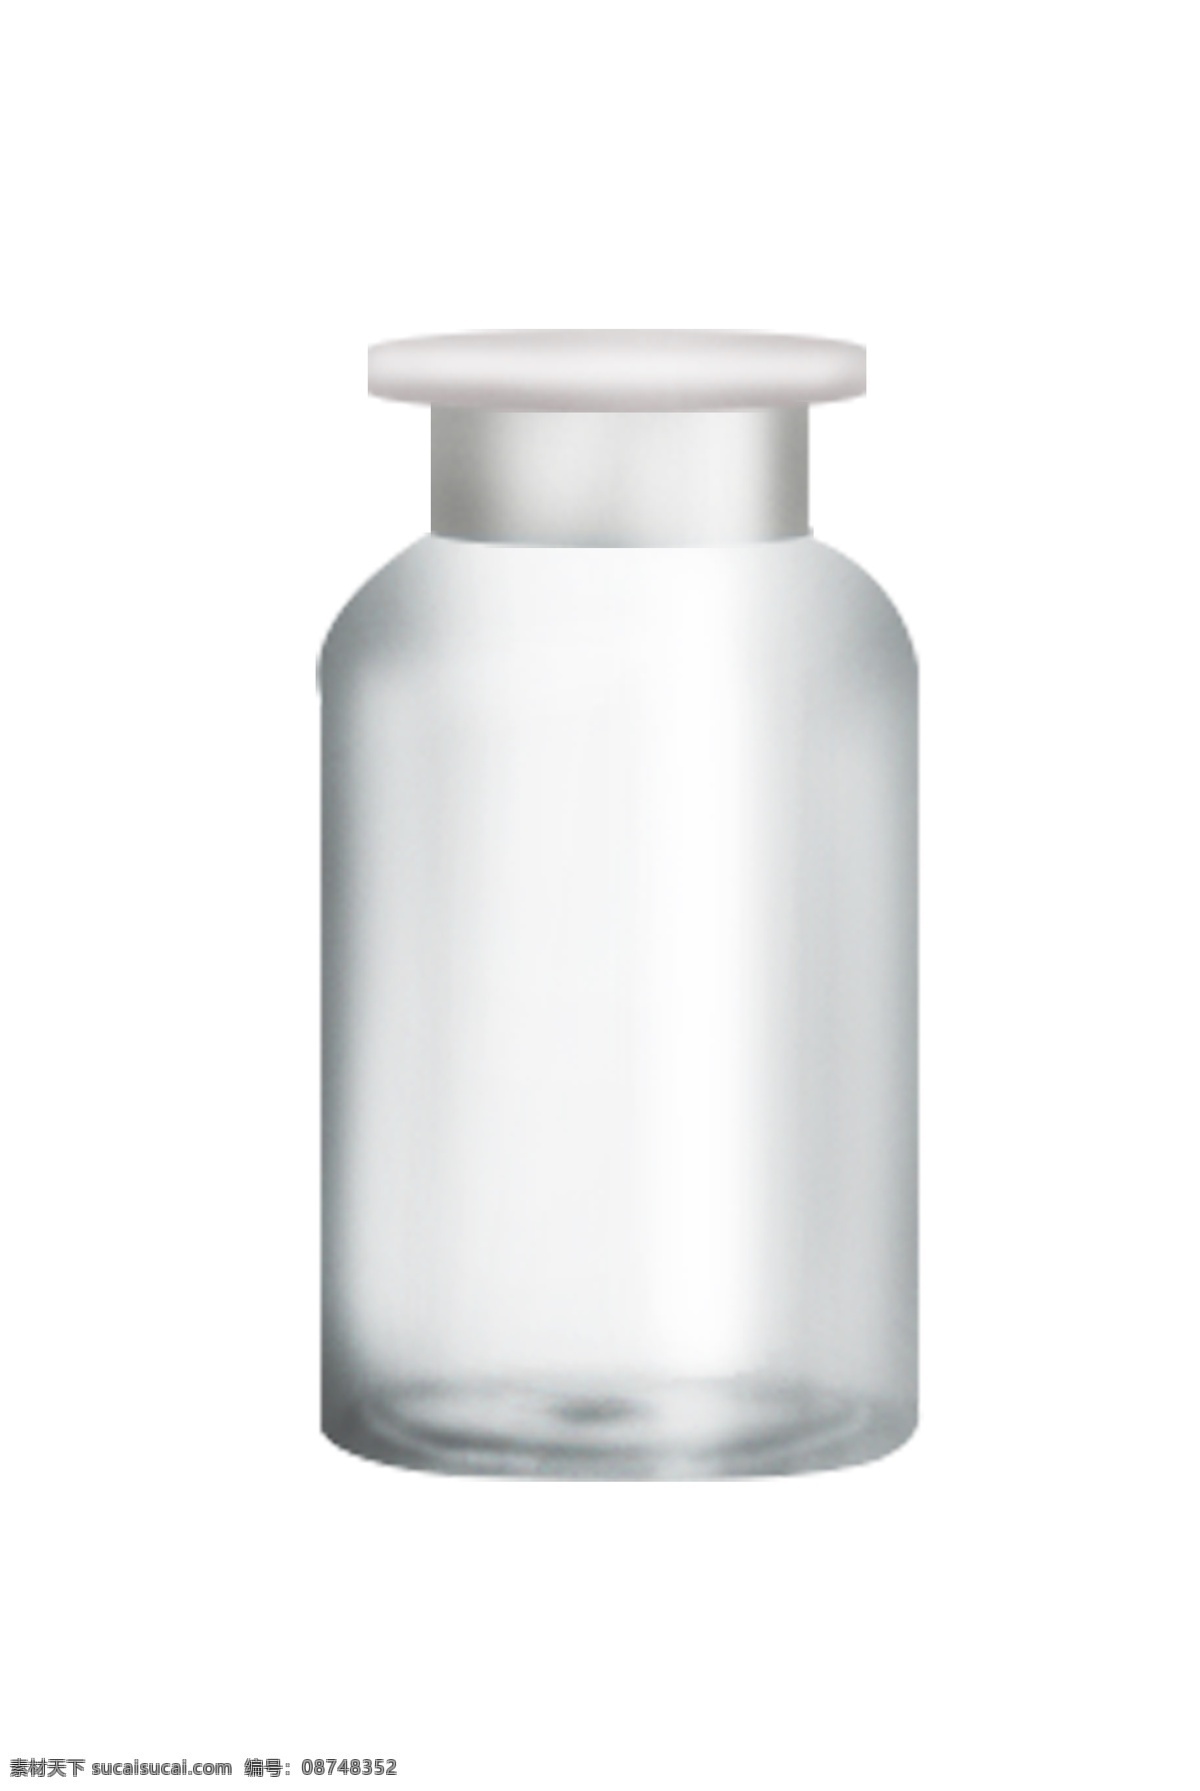 玻璃 容器 罐子 插画 玻璃容器 玻璃罐子 瓶子 饮料瓶子 清澈 解渴 简约 瓶口 透明 玻璃瓶 场瓶